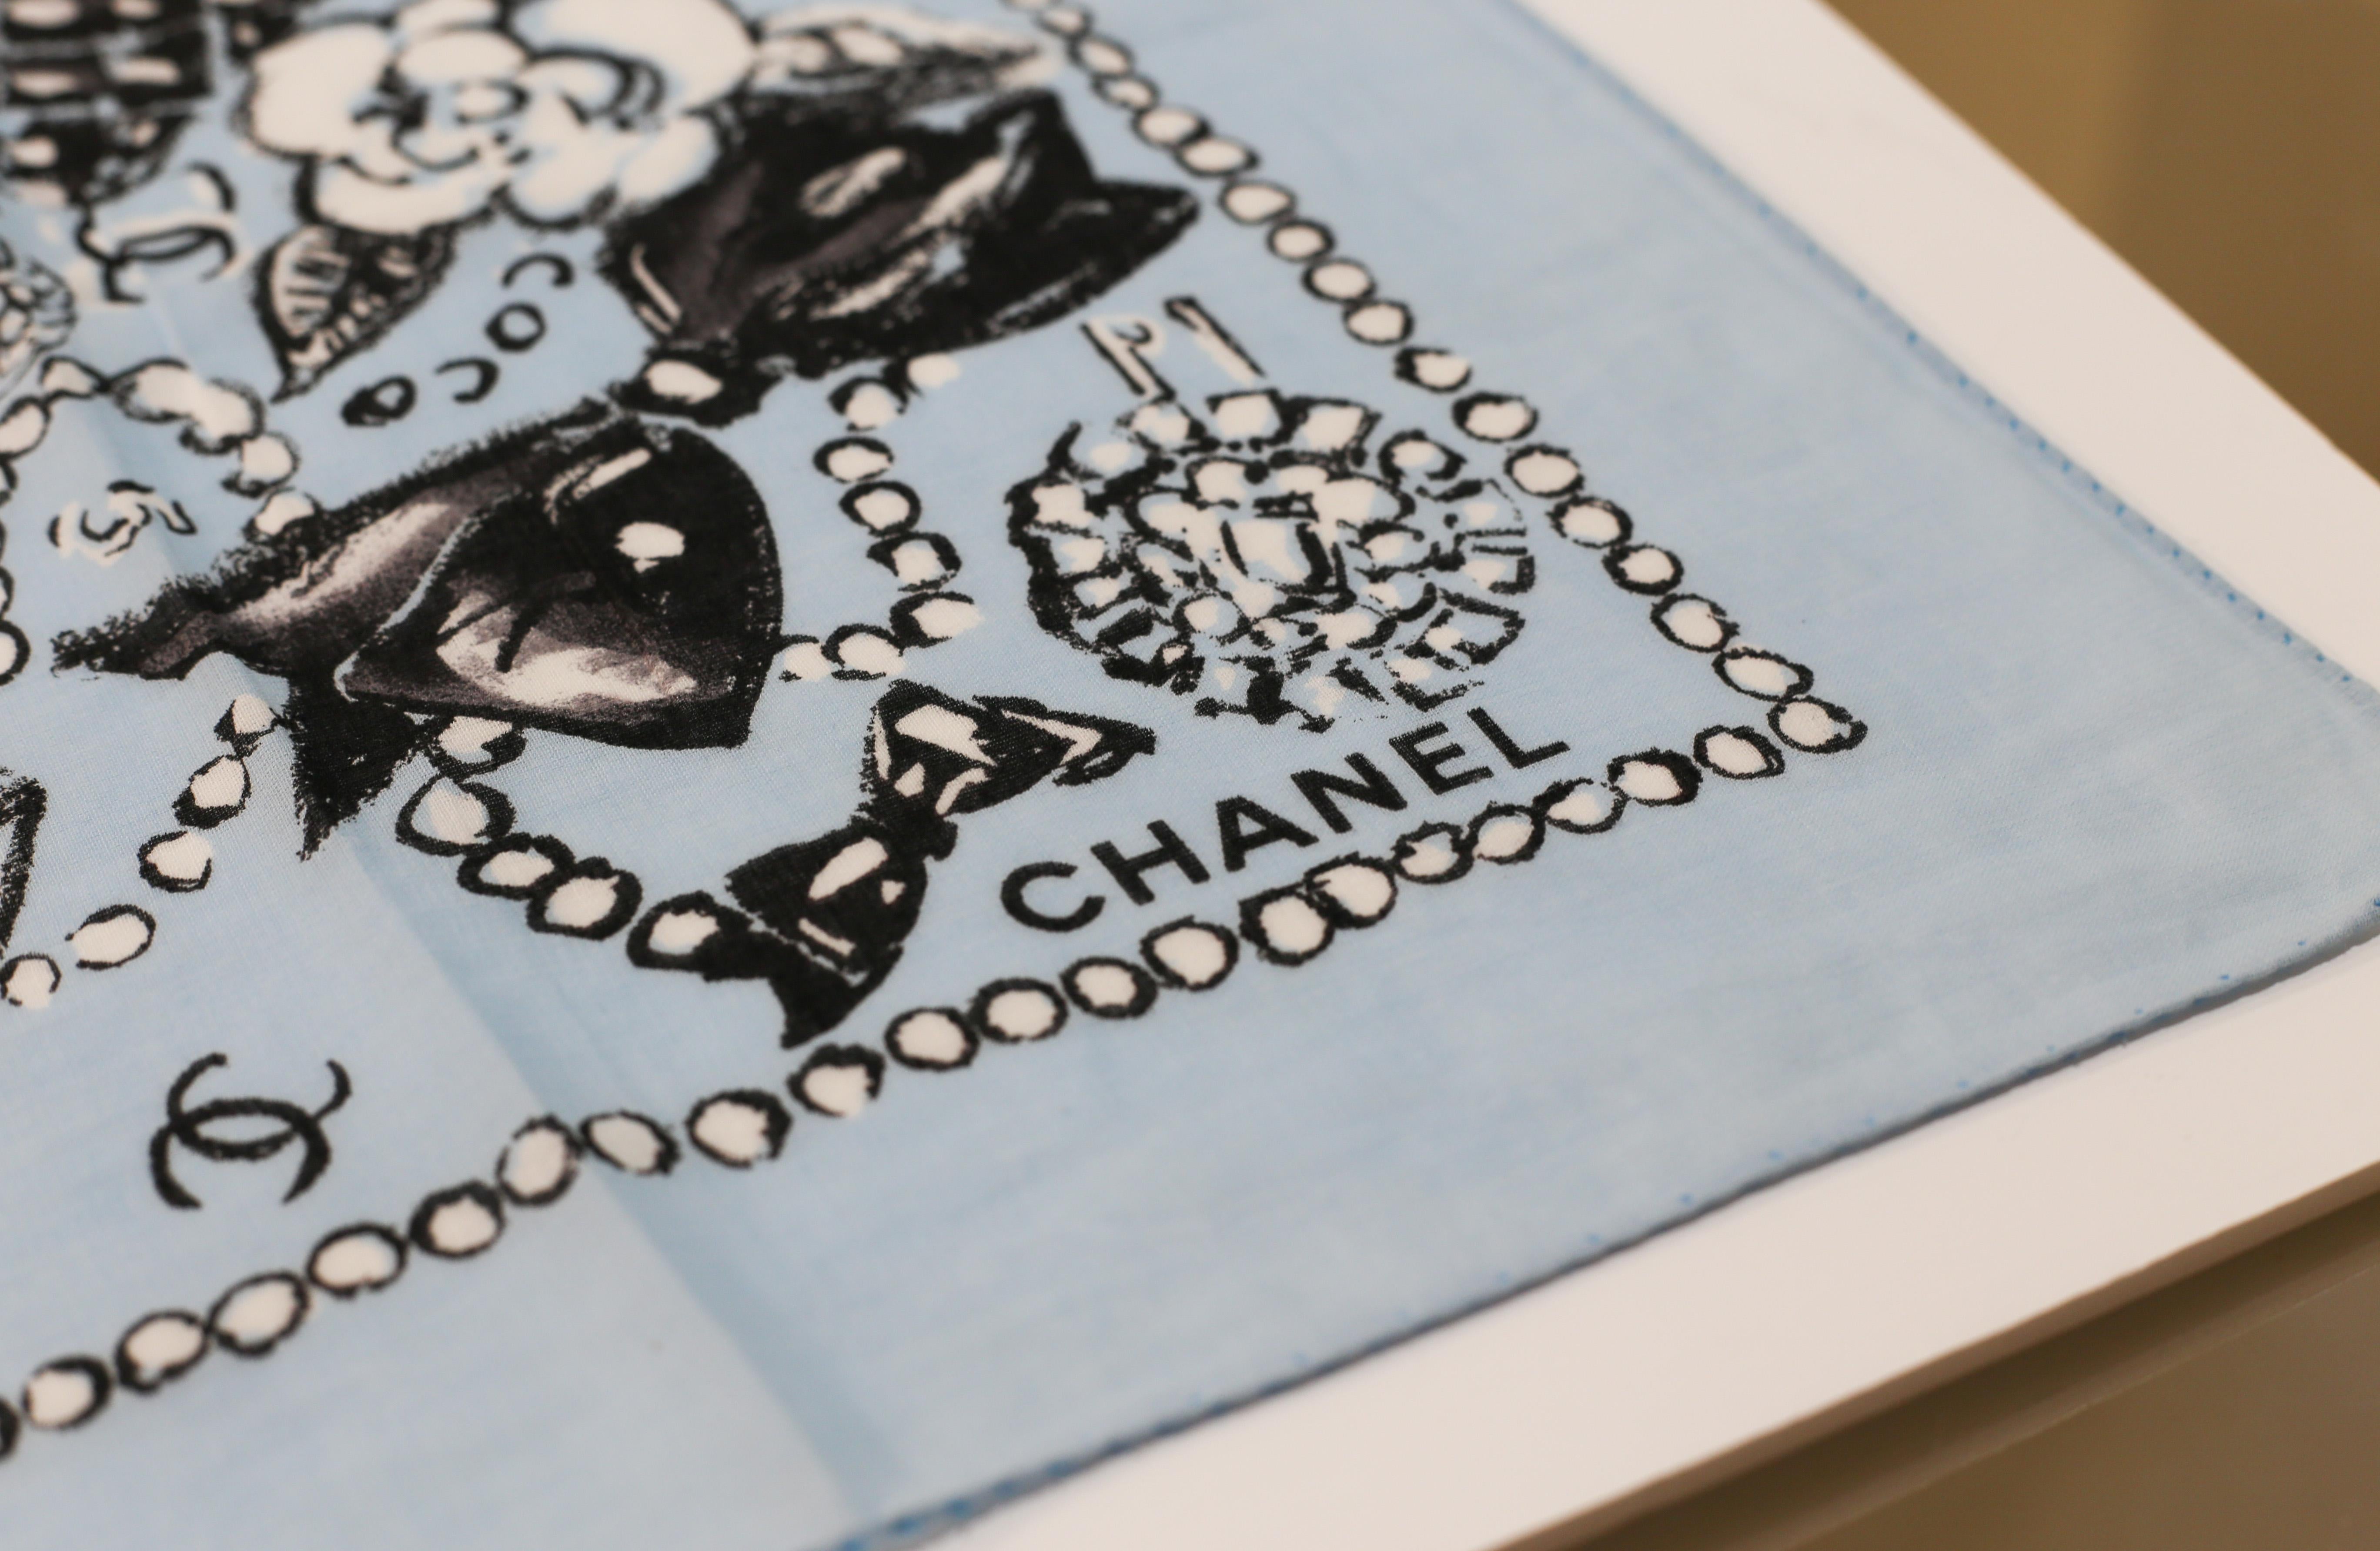 Echarpe paréo CHANEL
Un élégant paréo de plage en coton avec le logo CC de Chanel imprimé en noir et blanc sur une couleur bleu baba. 
Dress to Impress - un accessoire Chanel indispensable dans votre garde-robe:: à porter de différentes manières et